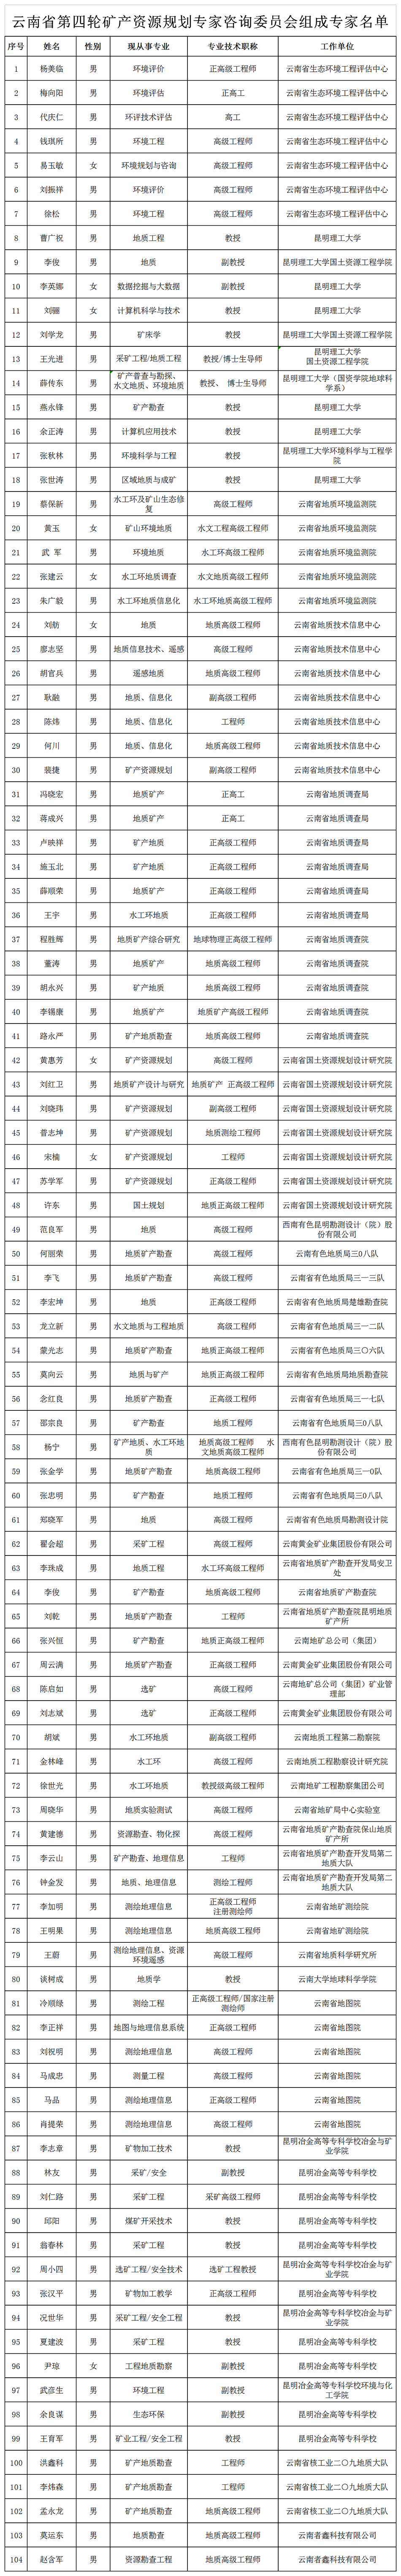 云南省第四轮矿产资源规划专家咨询委员会组成专家名单